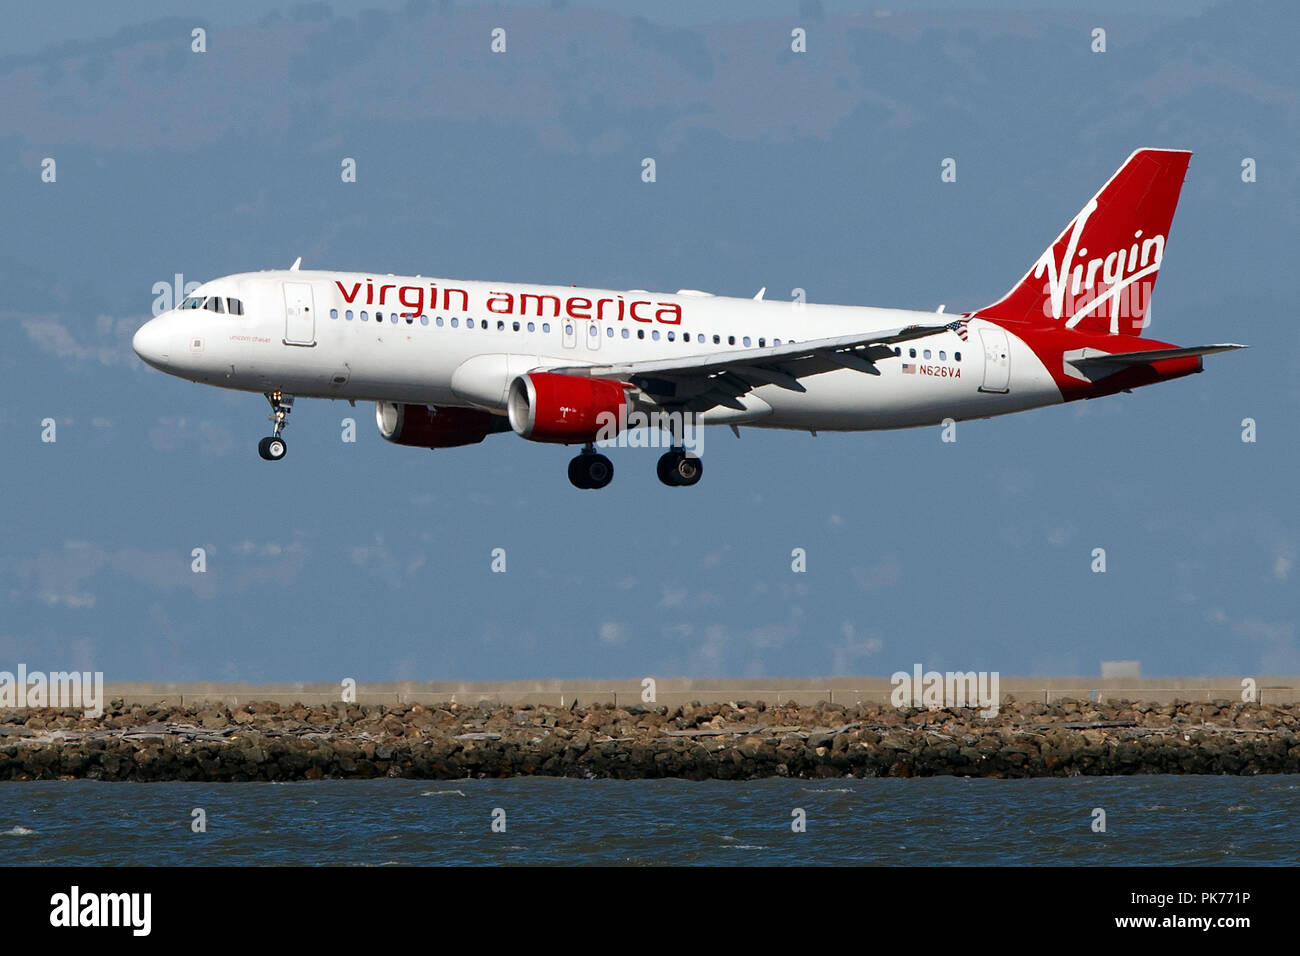 Ein von Virgin America Landung am Flughafen San Francisco International (Ksfo), San Francisco, Kalifornien (320-214 N 626 VA) betrieben Airbus, Vereinigte Staaten von Amerika Stockfoto